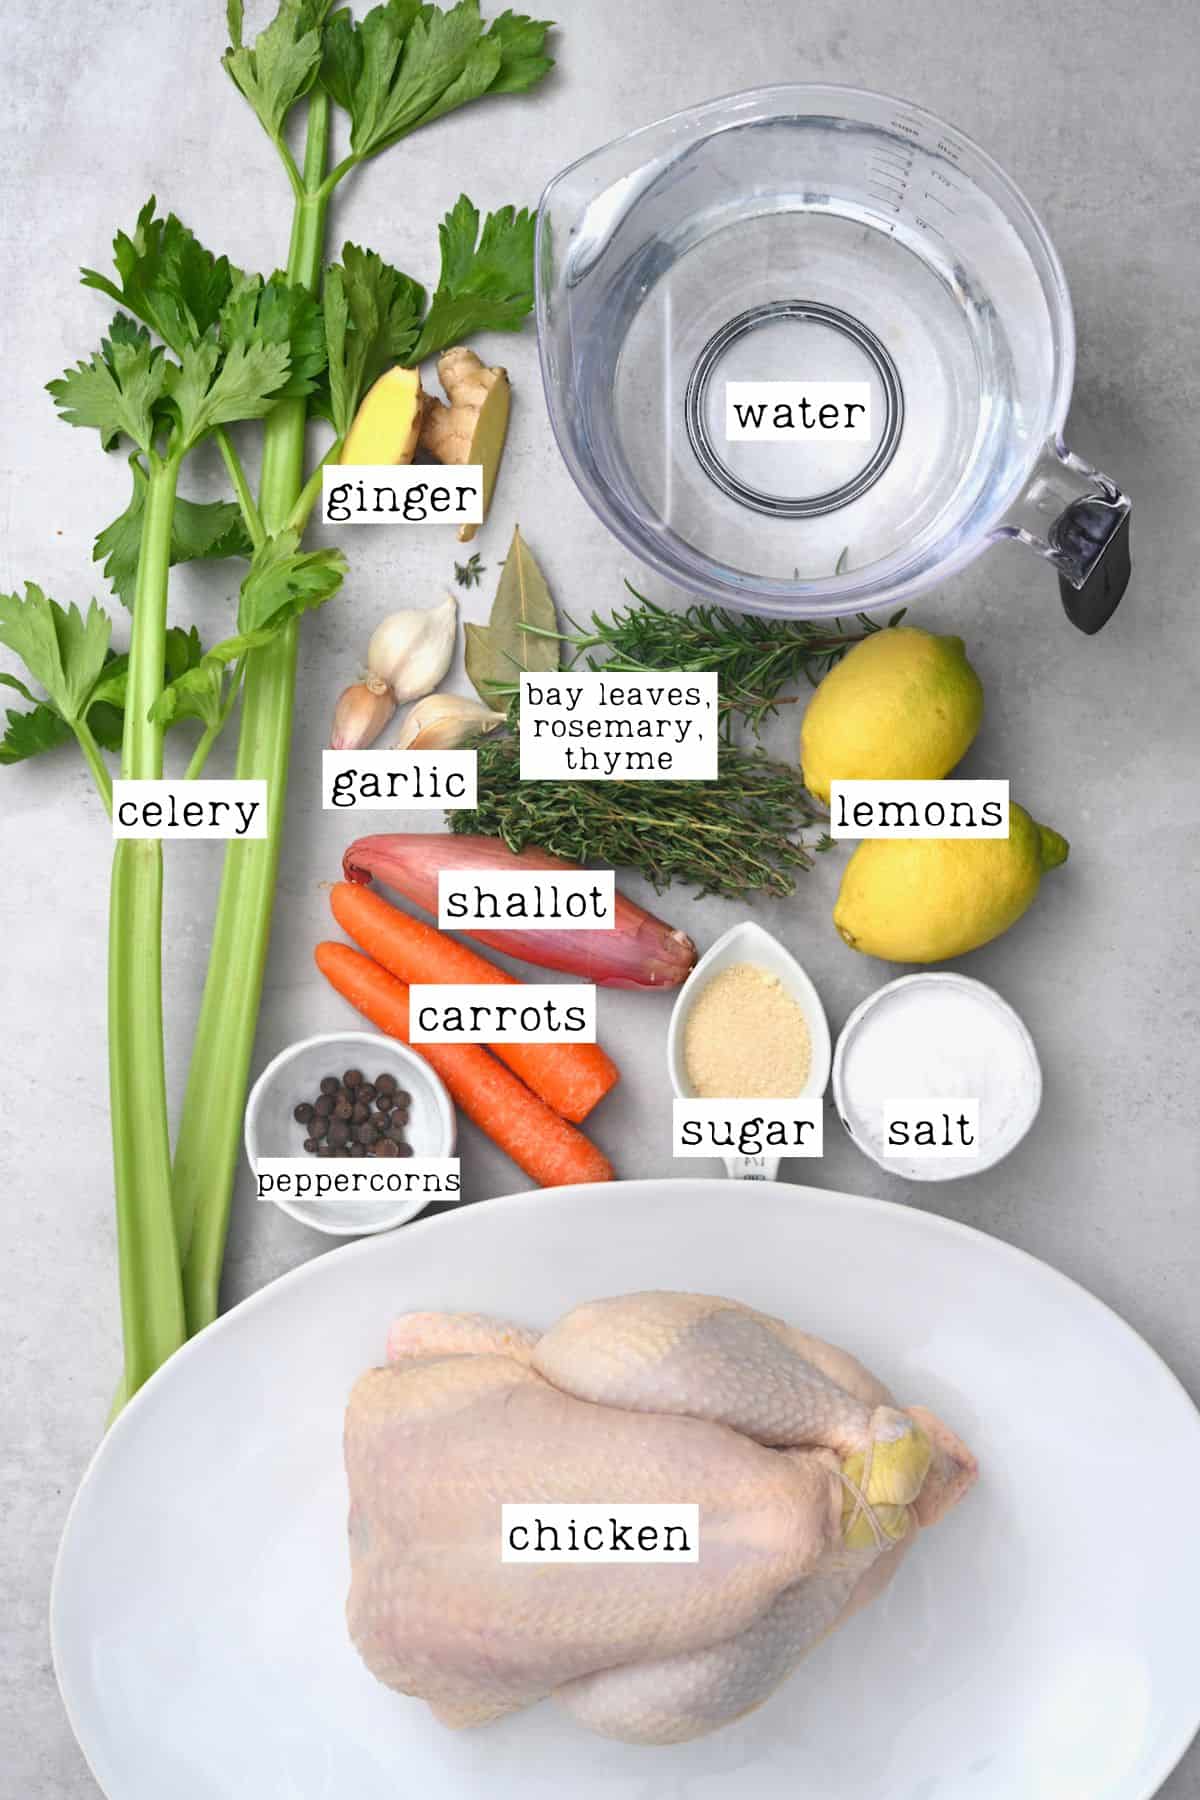 Ingredients for chicken brine